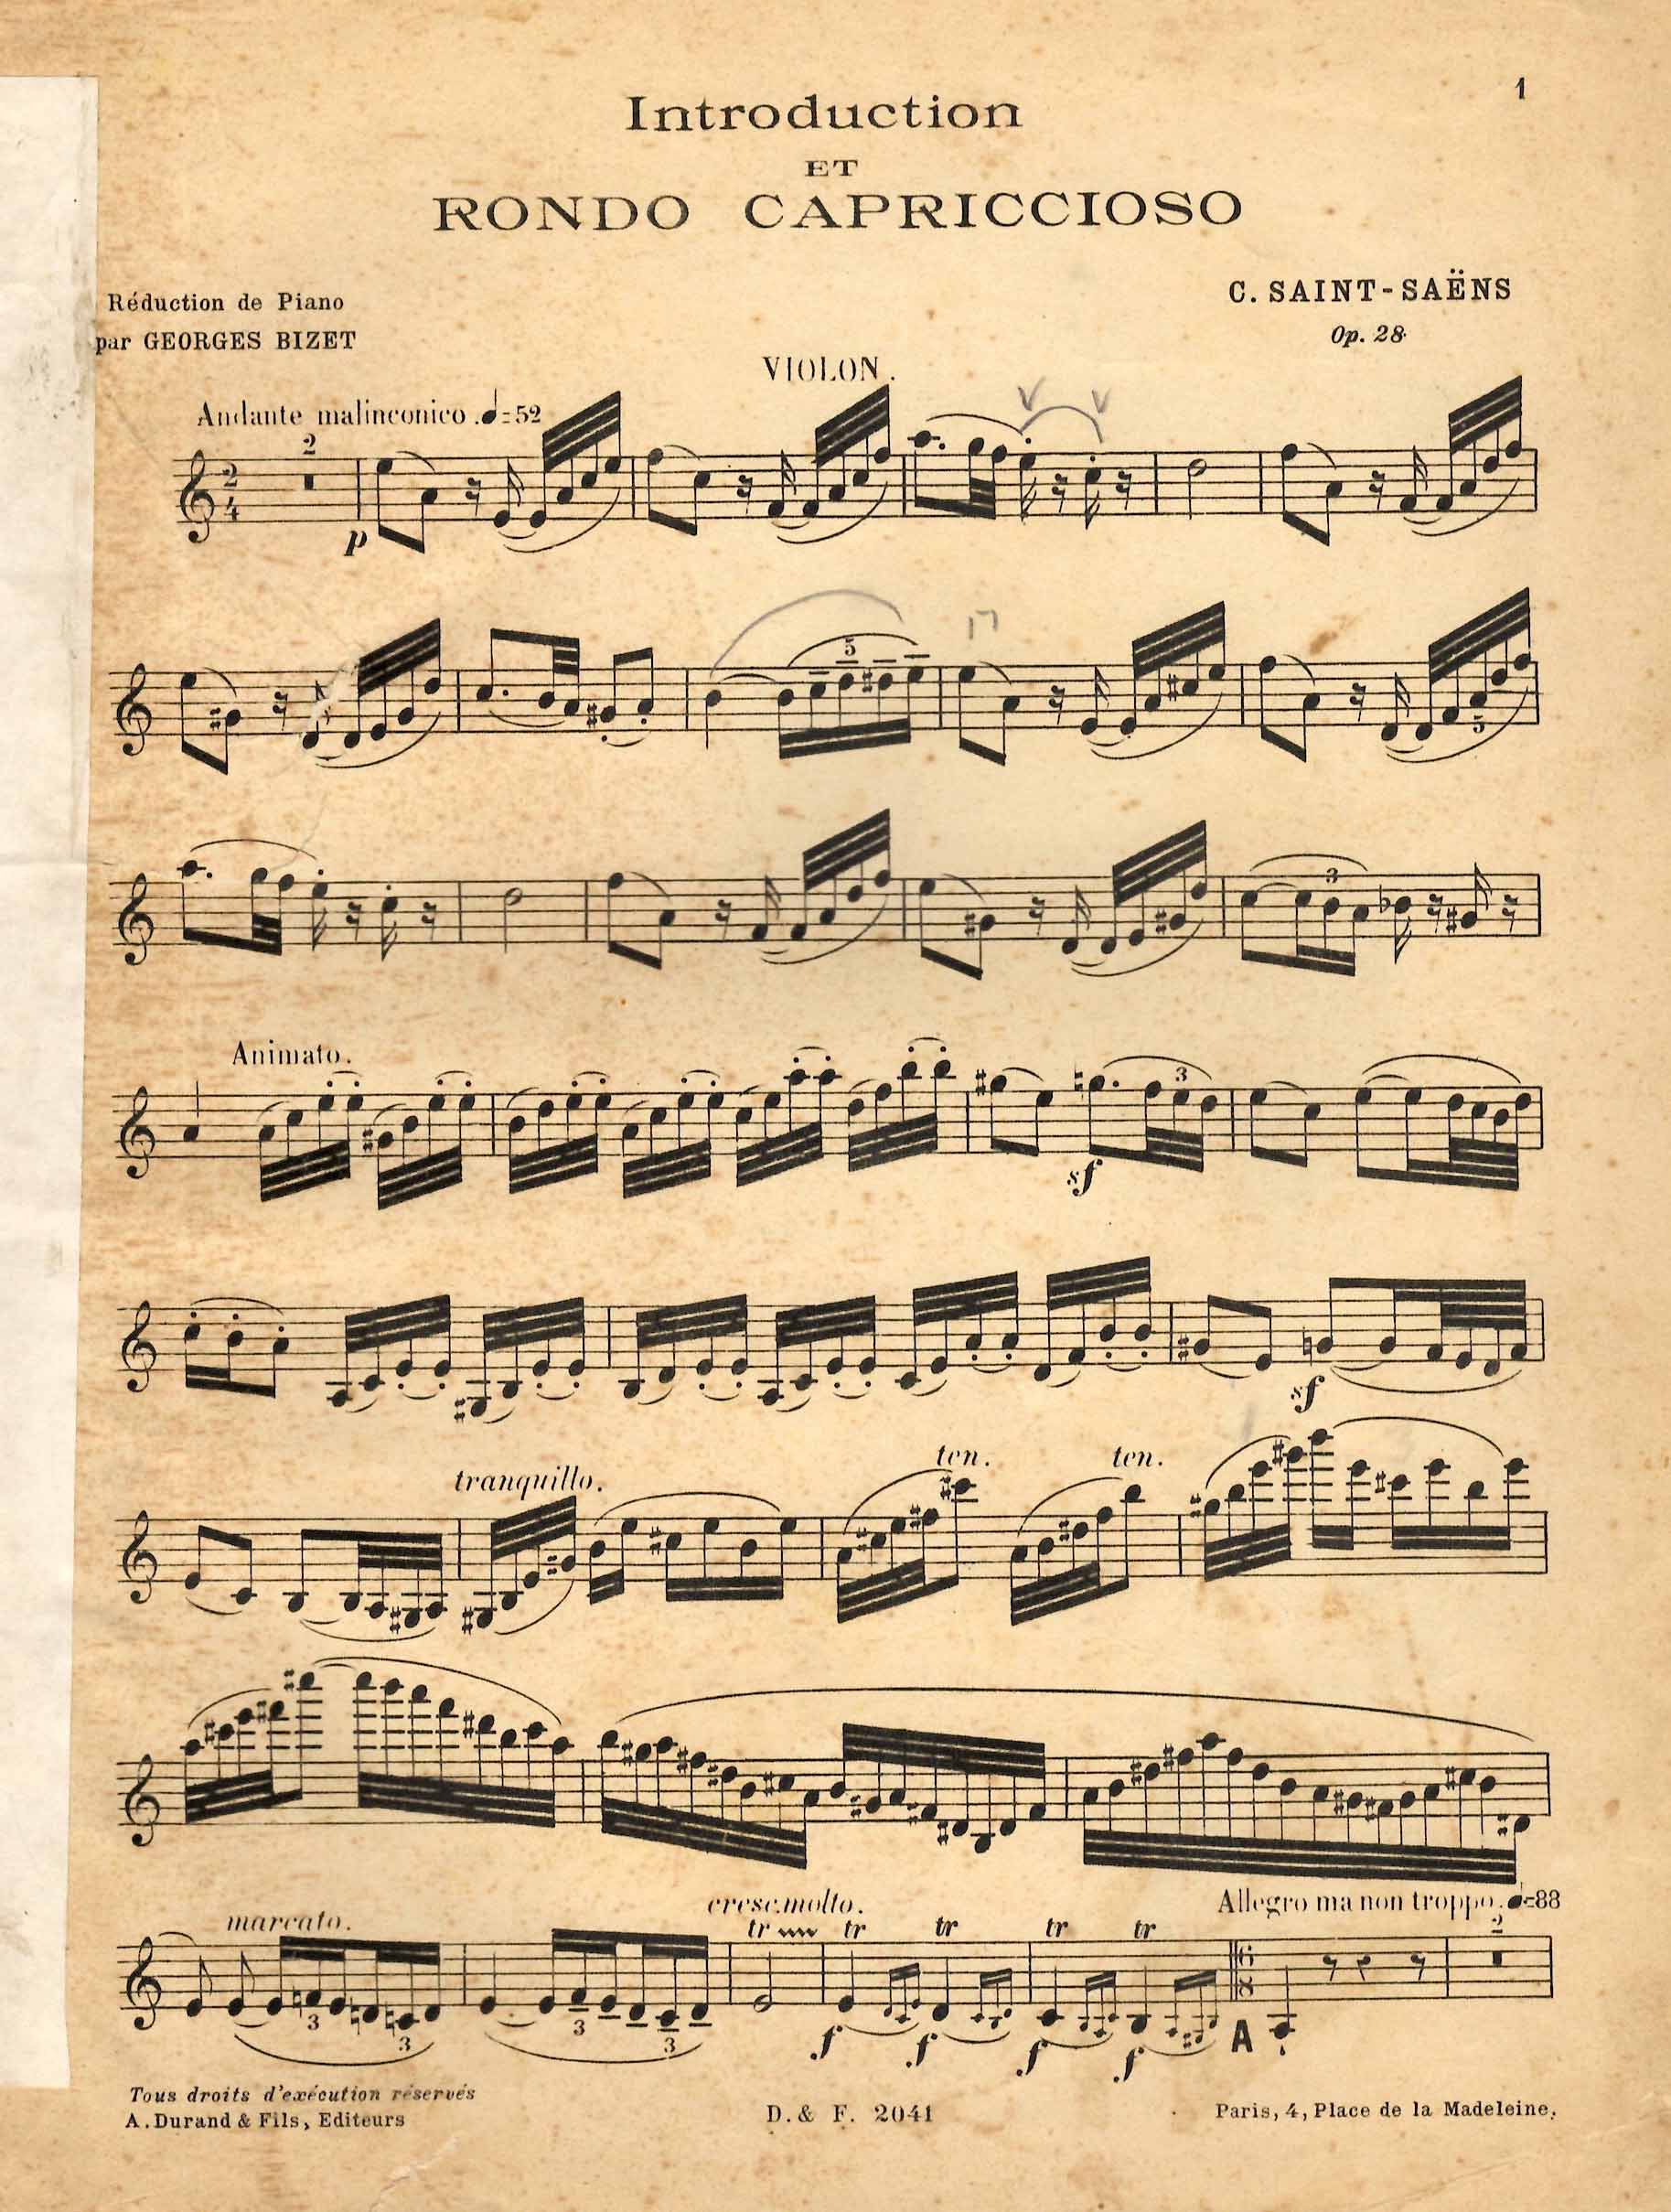 Introduction et Rondo Capriccioso, op. 28